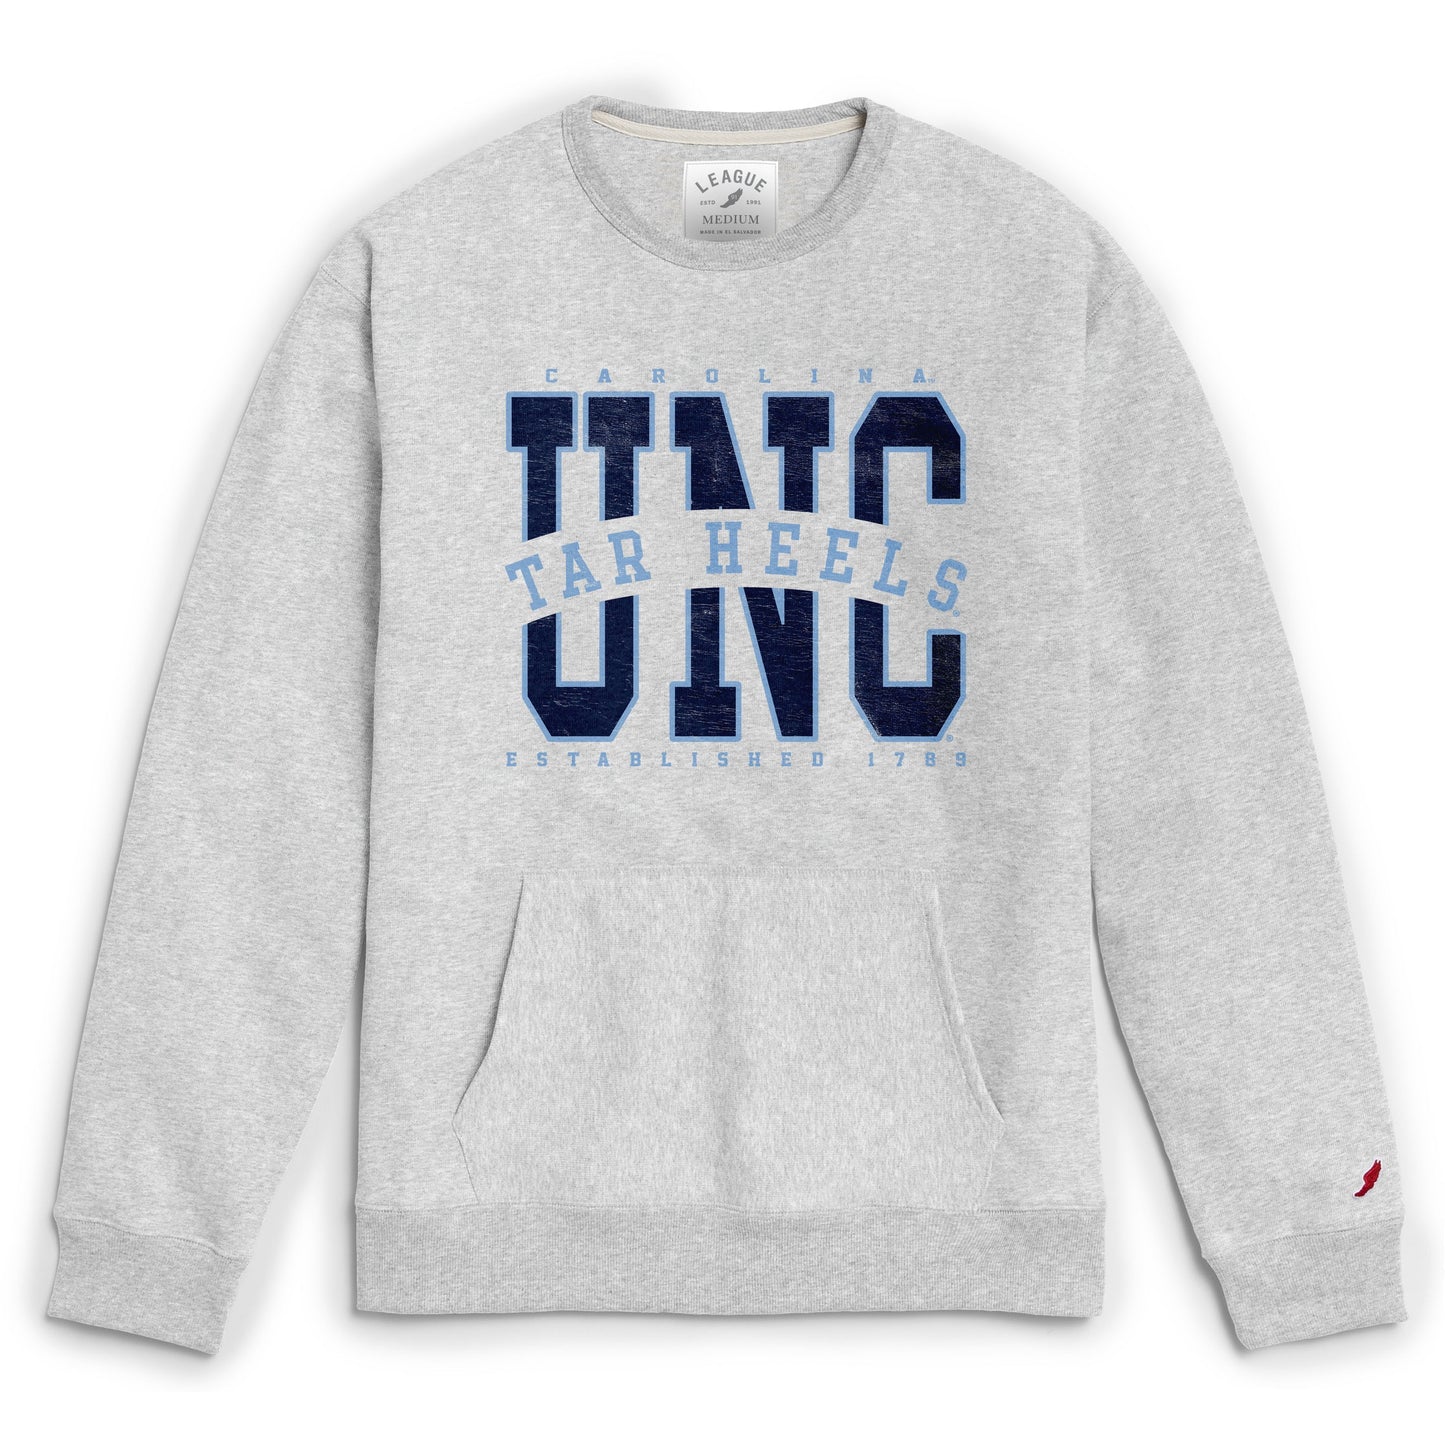 UNC Tar Heels Crewneck Sweatshirt with Front Pocket